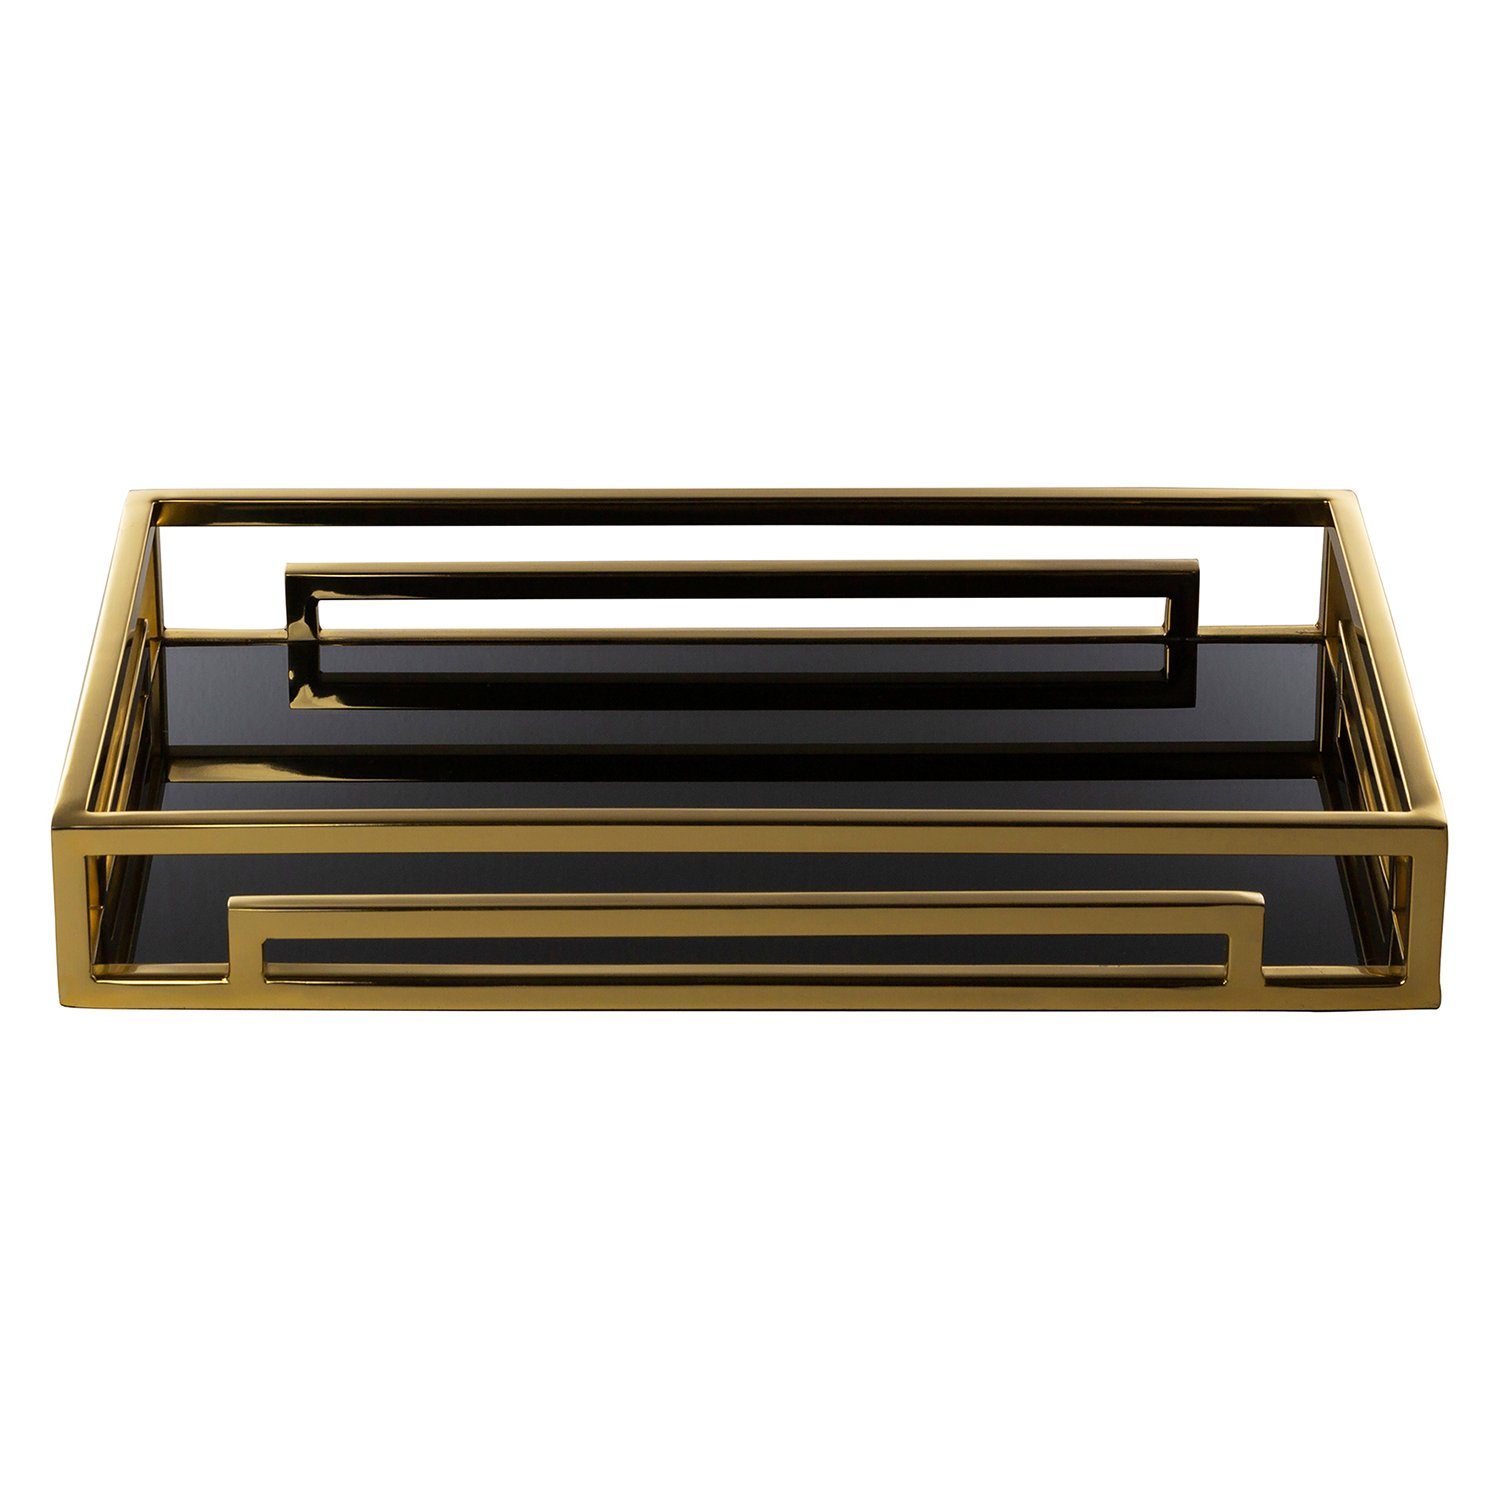 Edelstahl Spiegelglasplatte x T.40cm - mit Dekotablett MERANO x + - B.25cm H.6cm (Edelstahlkorpus - galvanisiert goldfarben Glasplatte), schwarzer - goldfarben Tablett Fink